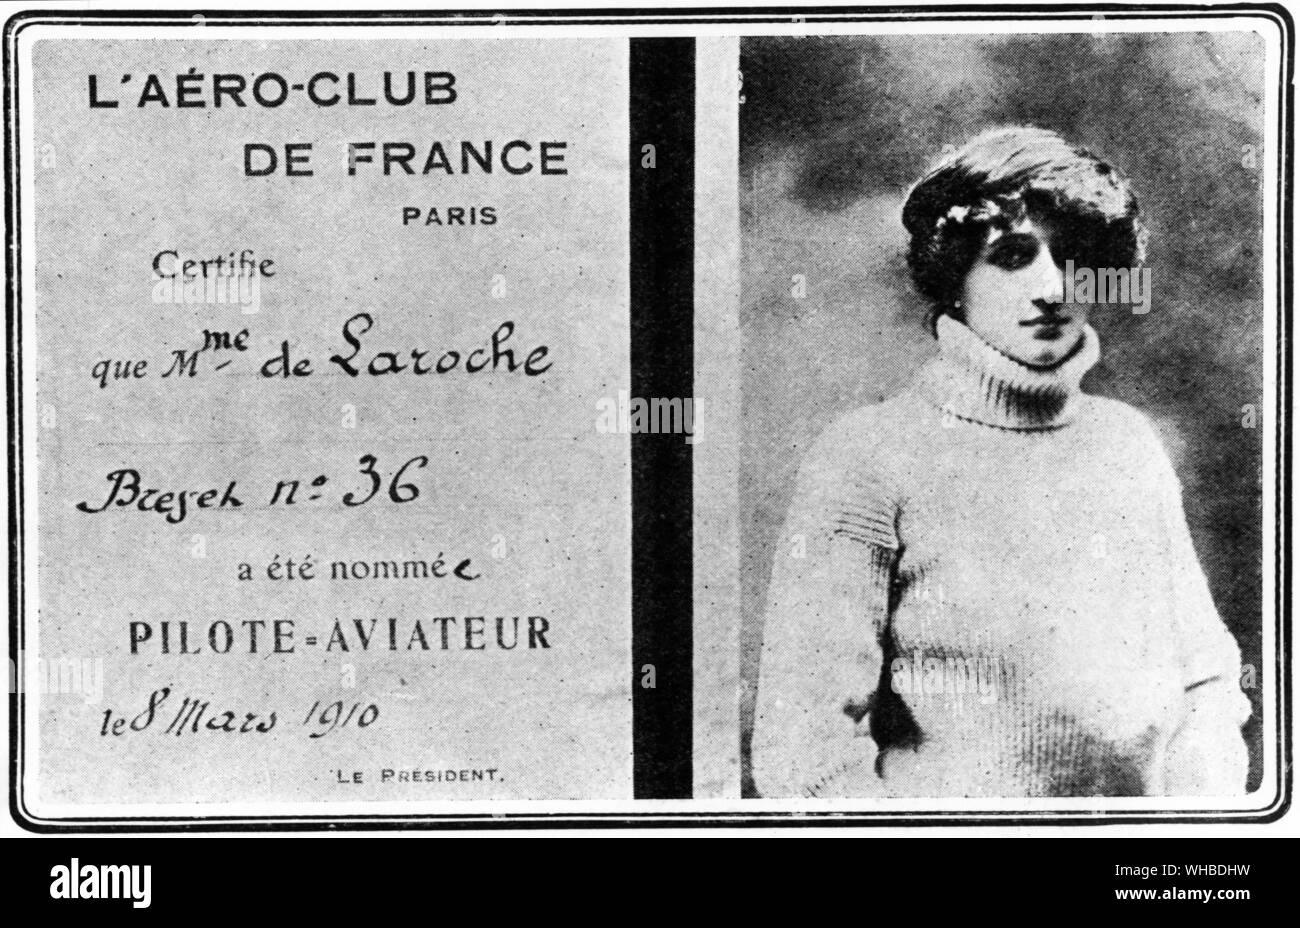 L'Aéro-Club de France, Paris - La première reconnaissance officielle de flying femme : Mme de Laroche's certificat comme pilote aviateur - le premier accordé à une femme.. Banque D'Images